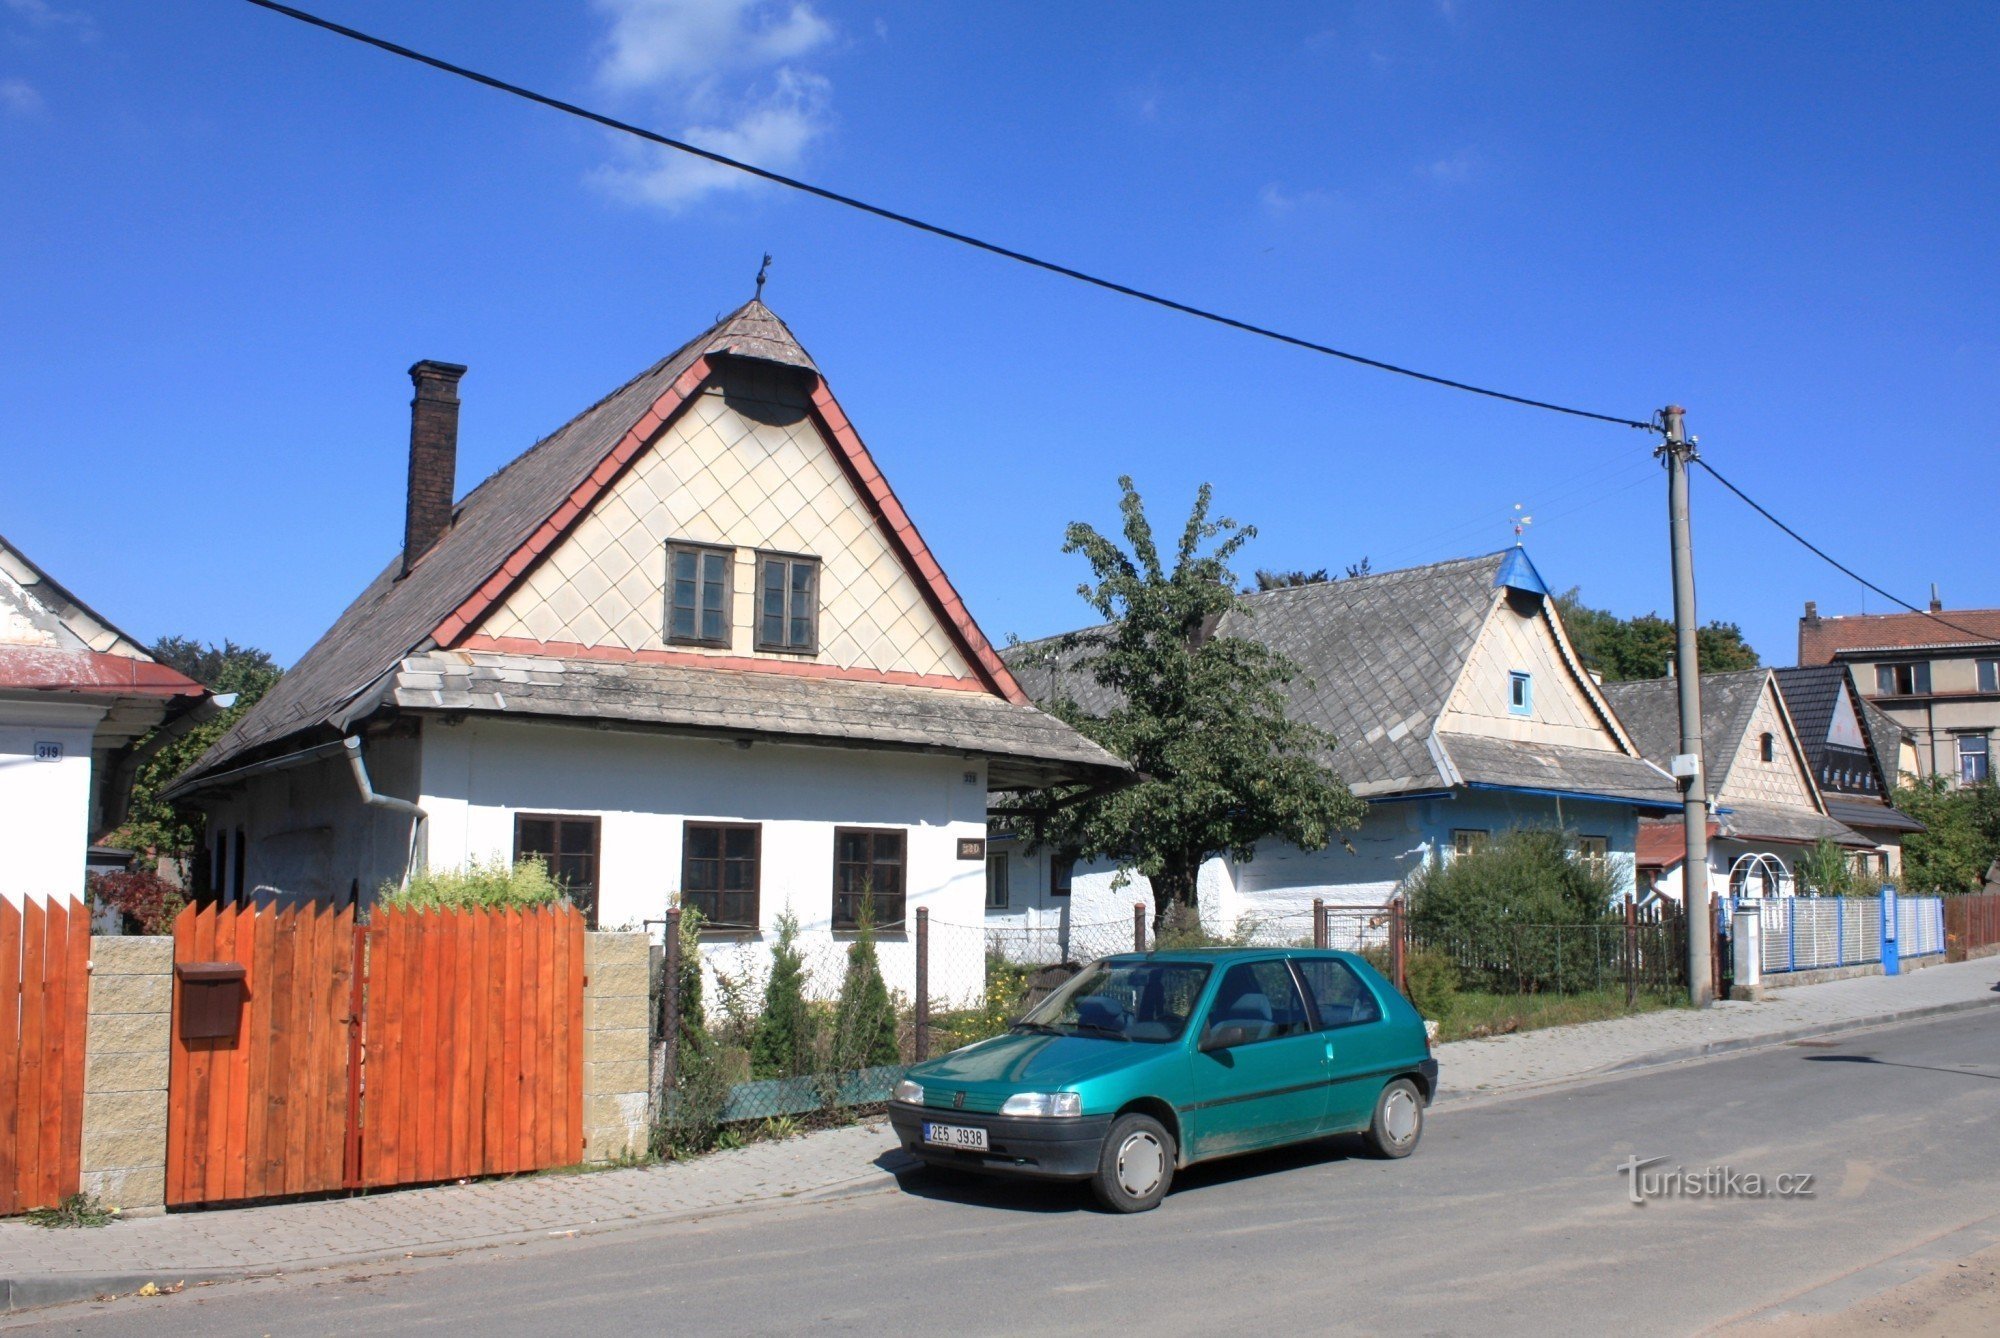 Những ngôi nhà được bảo tồn ở Podměstí